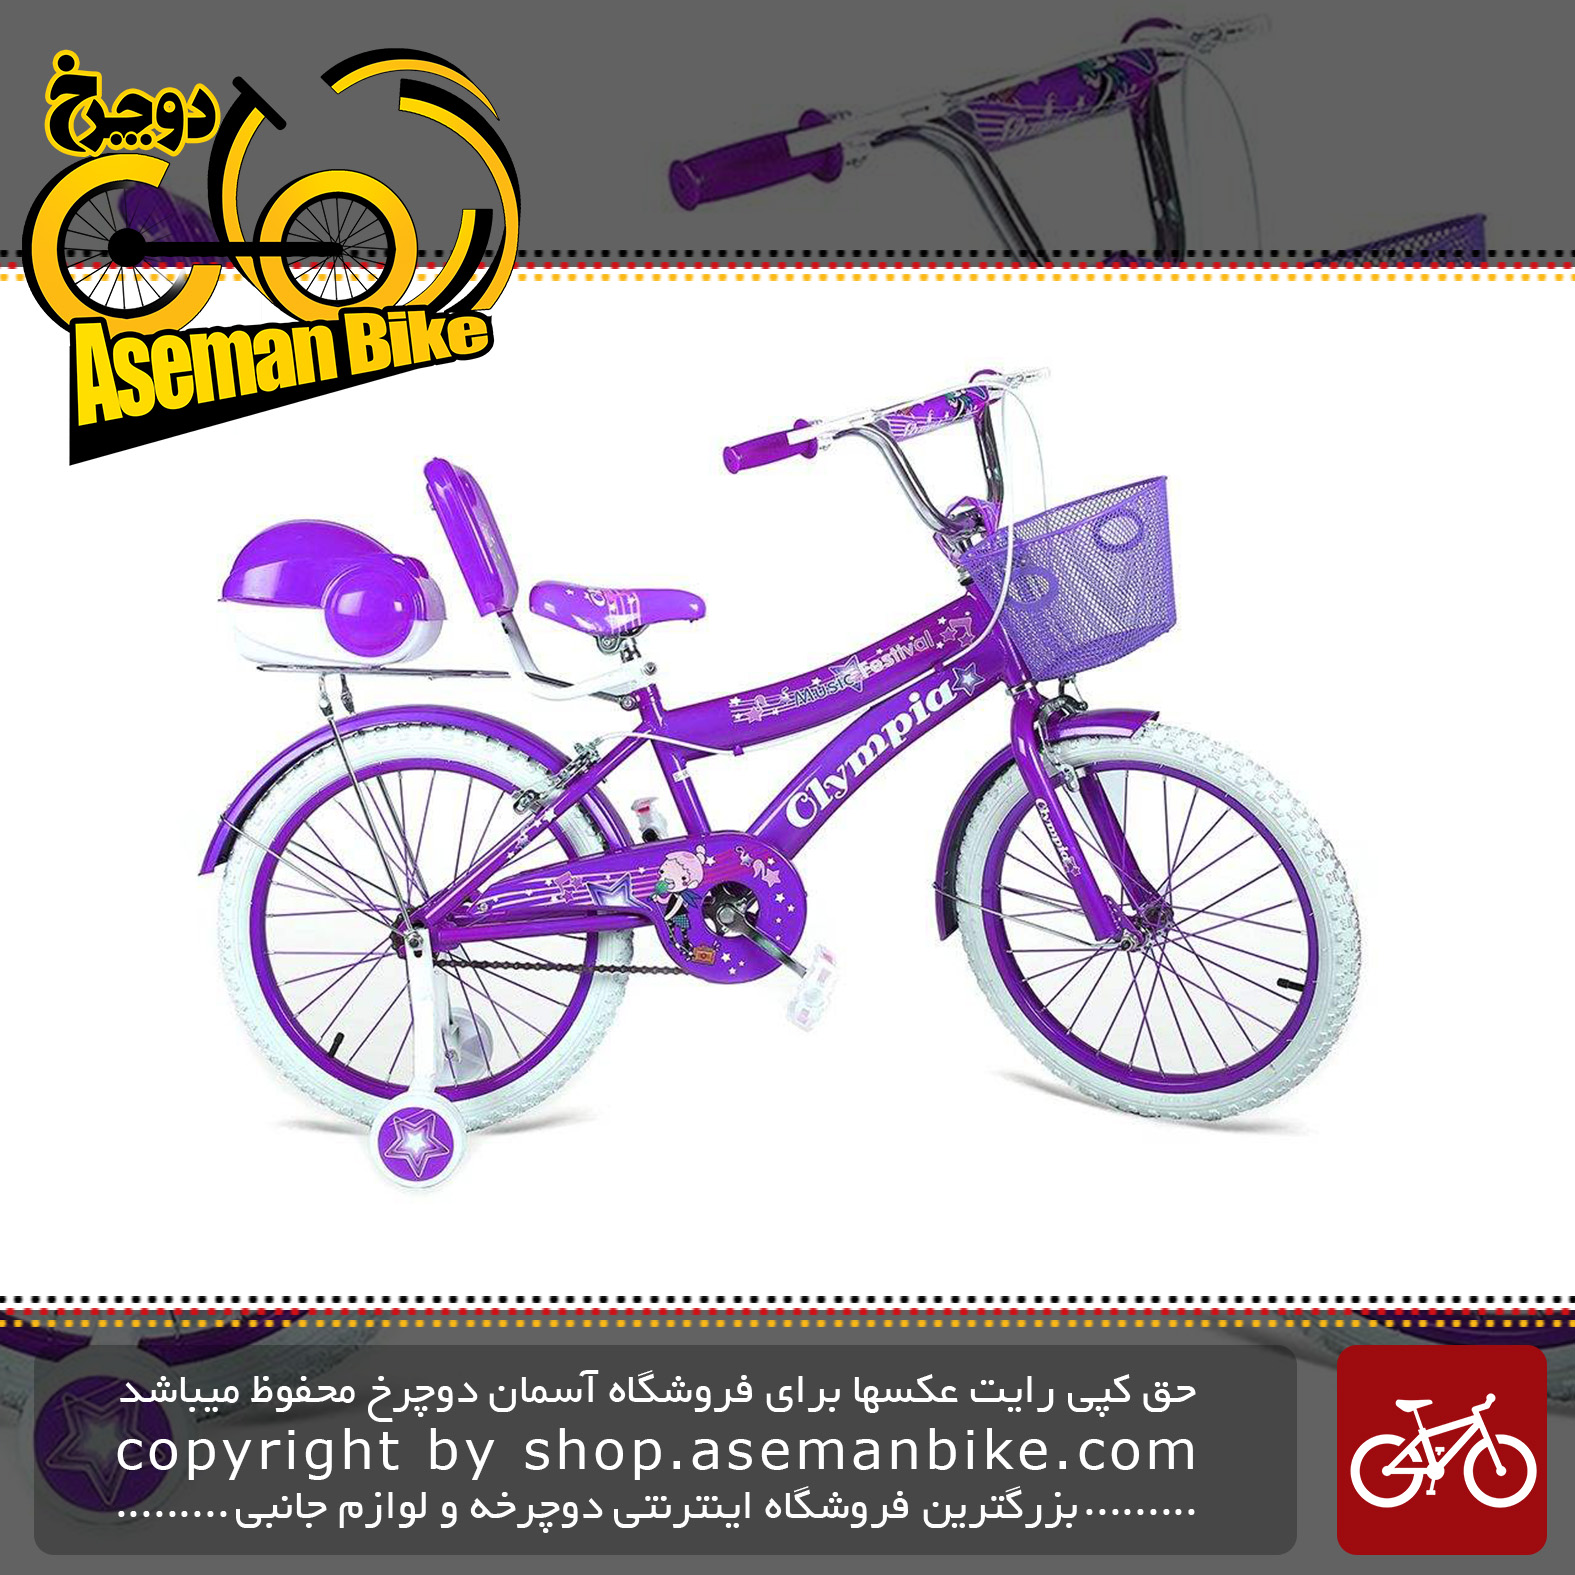  دوچرخه سواری بچه گانه المپیا مدل 20111 سایز 20 Olympia 20111 Baby Bike Size 20